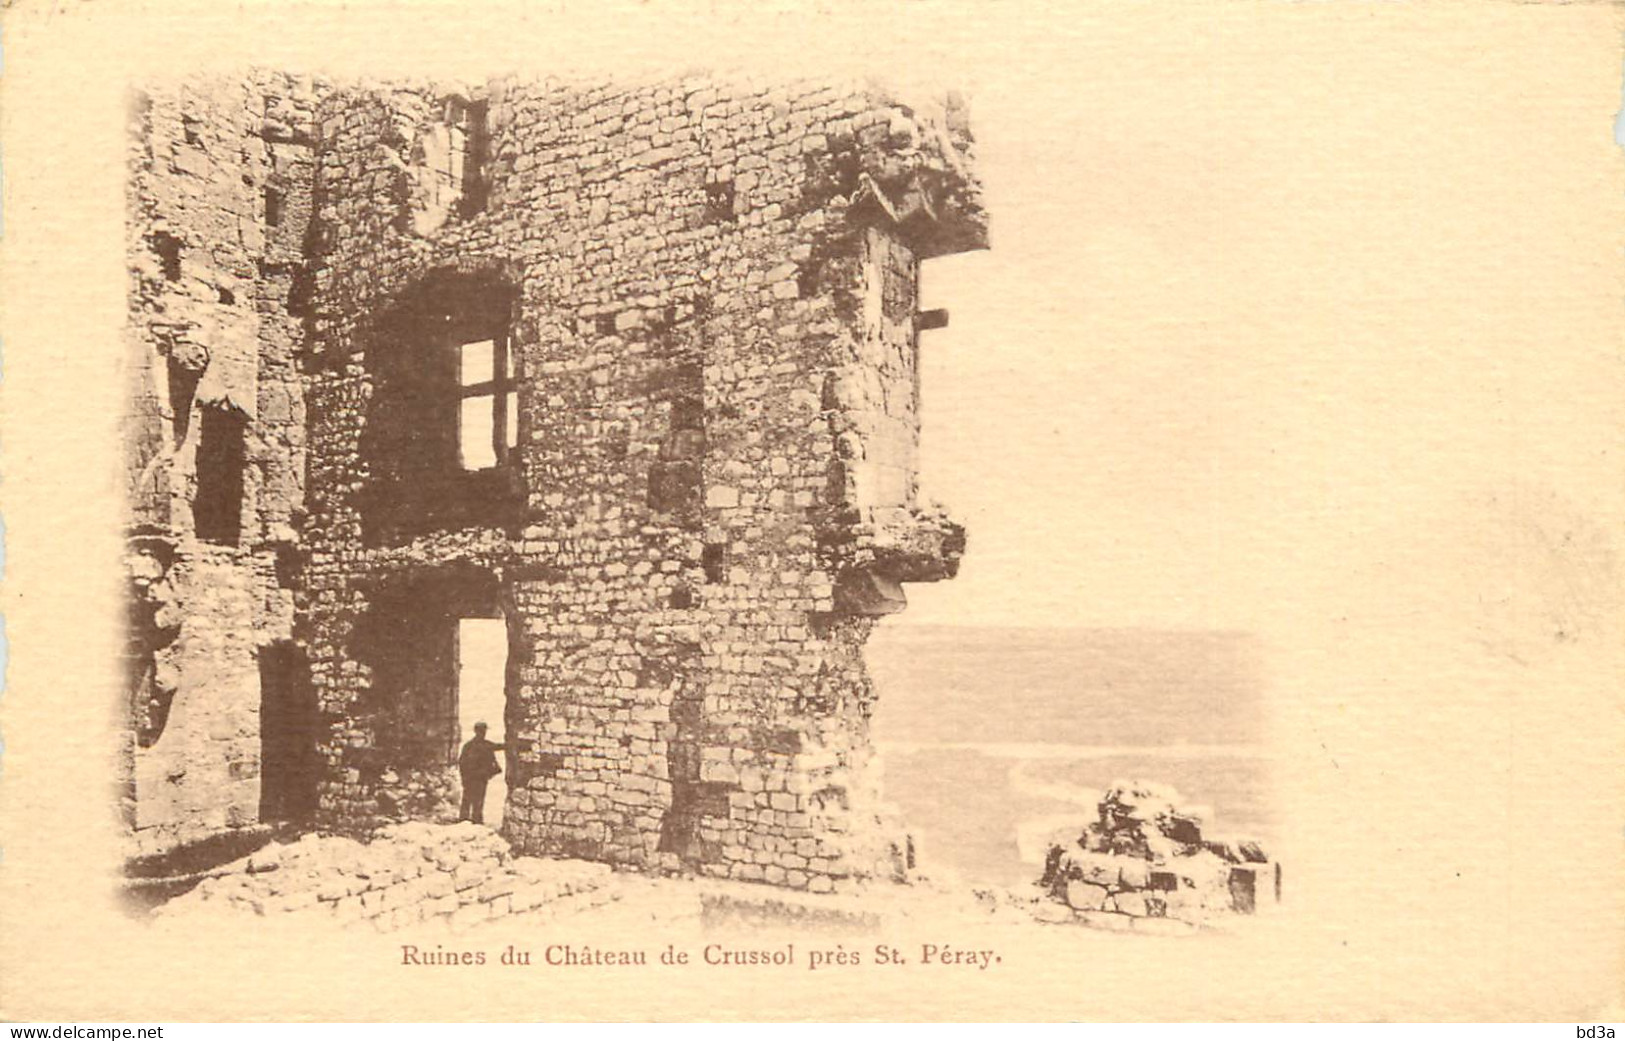  07  RUINES DU CHATEAU DE CRUSSOL    PRES SAINT PERAY - Saint Péray